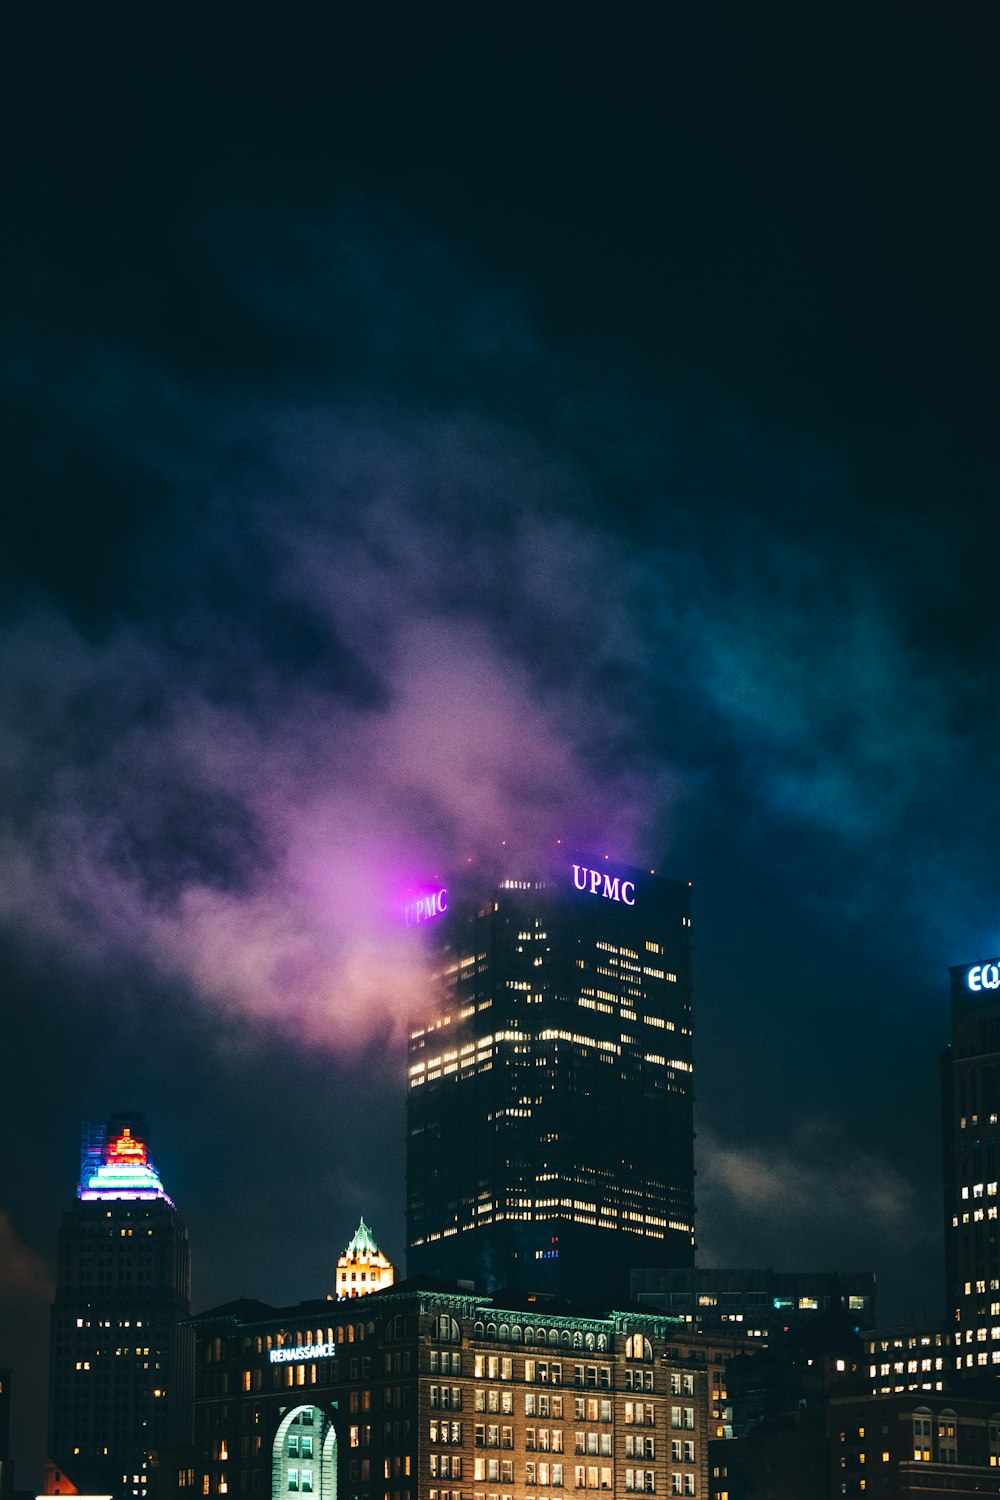 skyline della città con le luci accese durante la notte